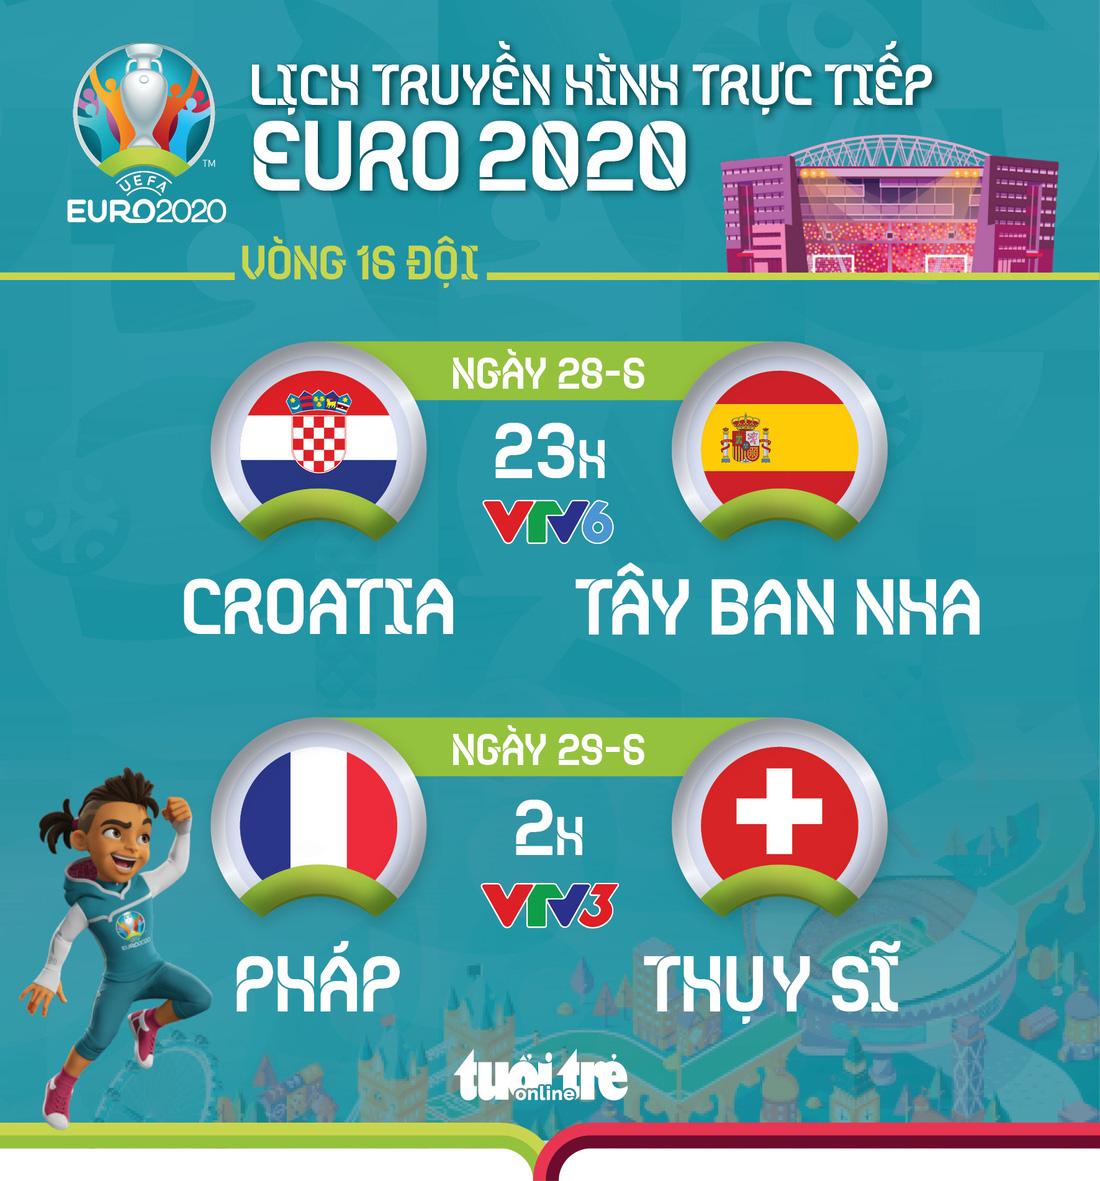 Lịch thi đấu vòng 16 đội Euro 2020: Croatia - Tây Ban Nha, Pháp - Thụy Sỹ - Ảnh 1.